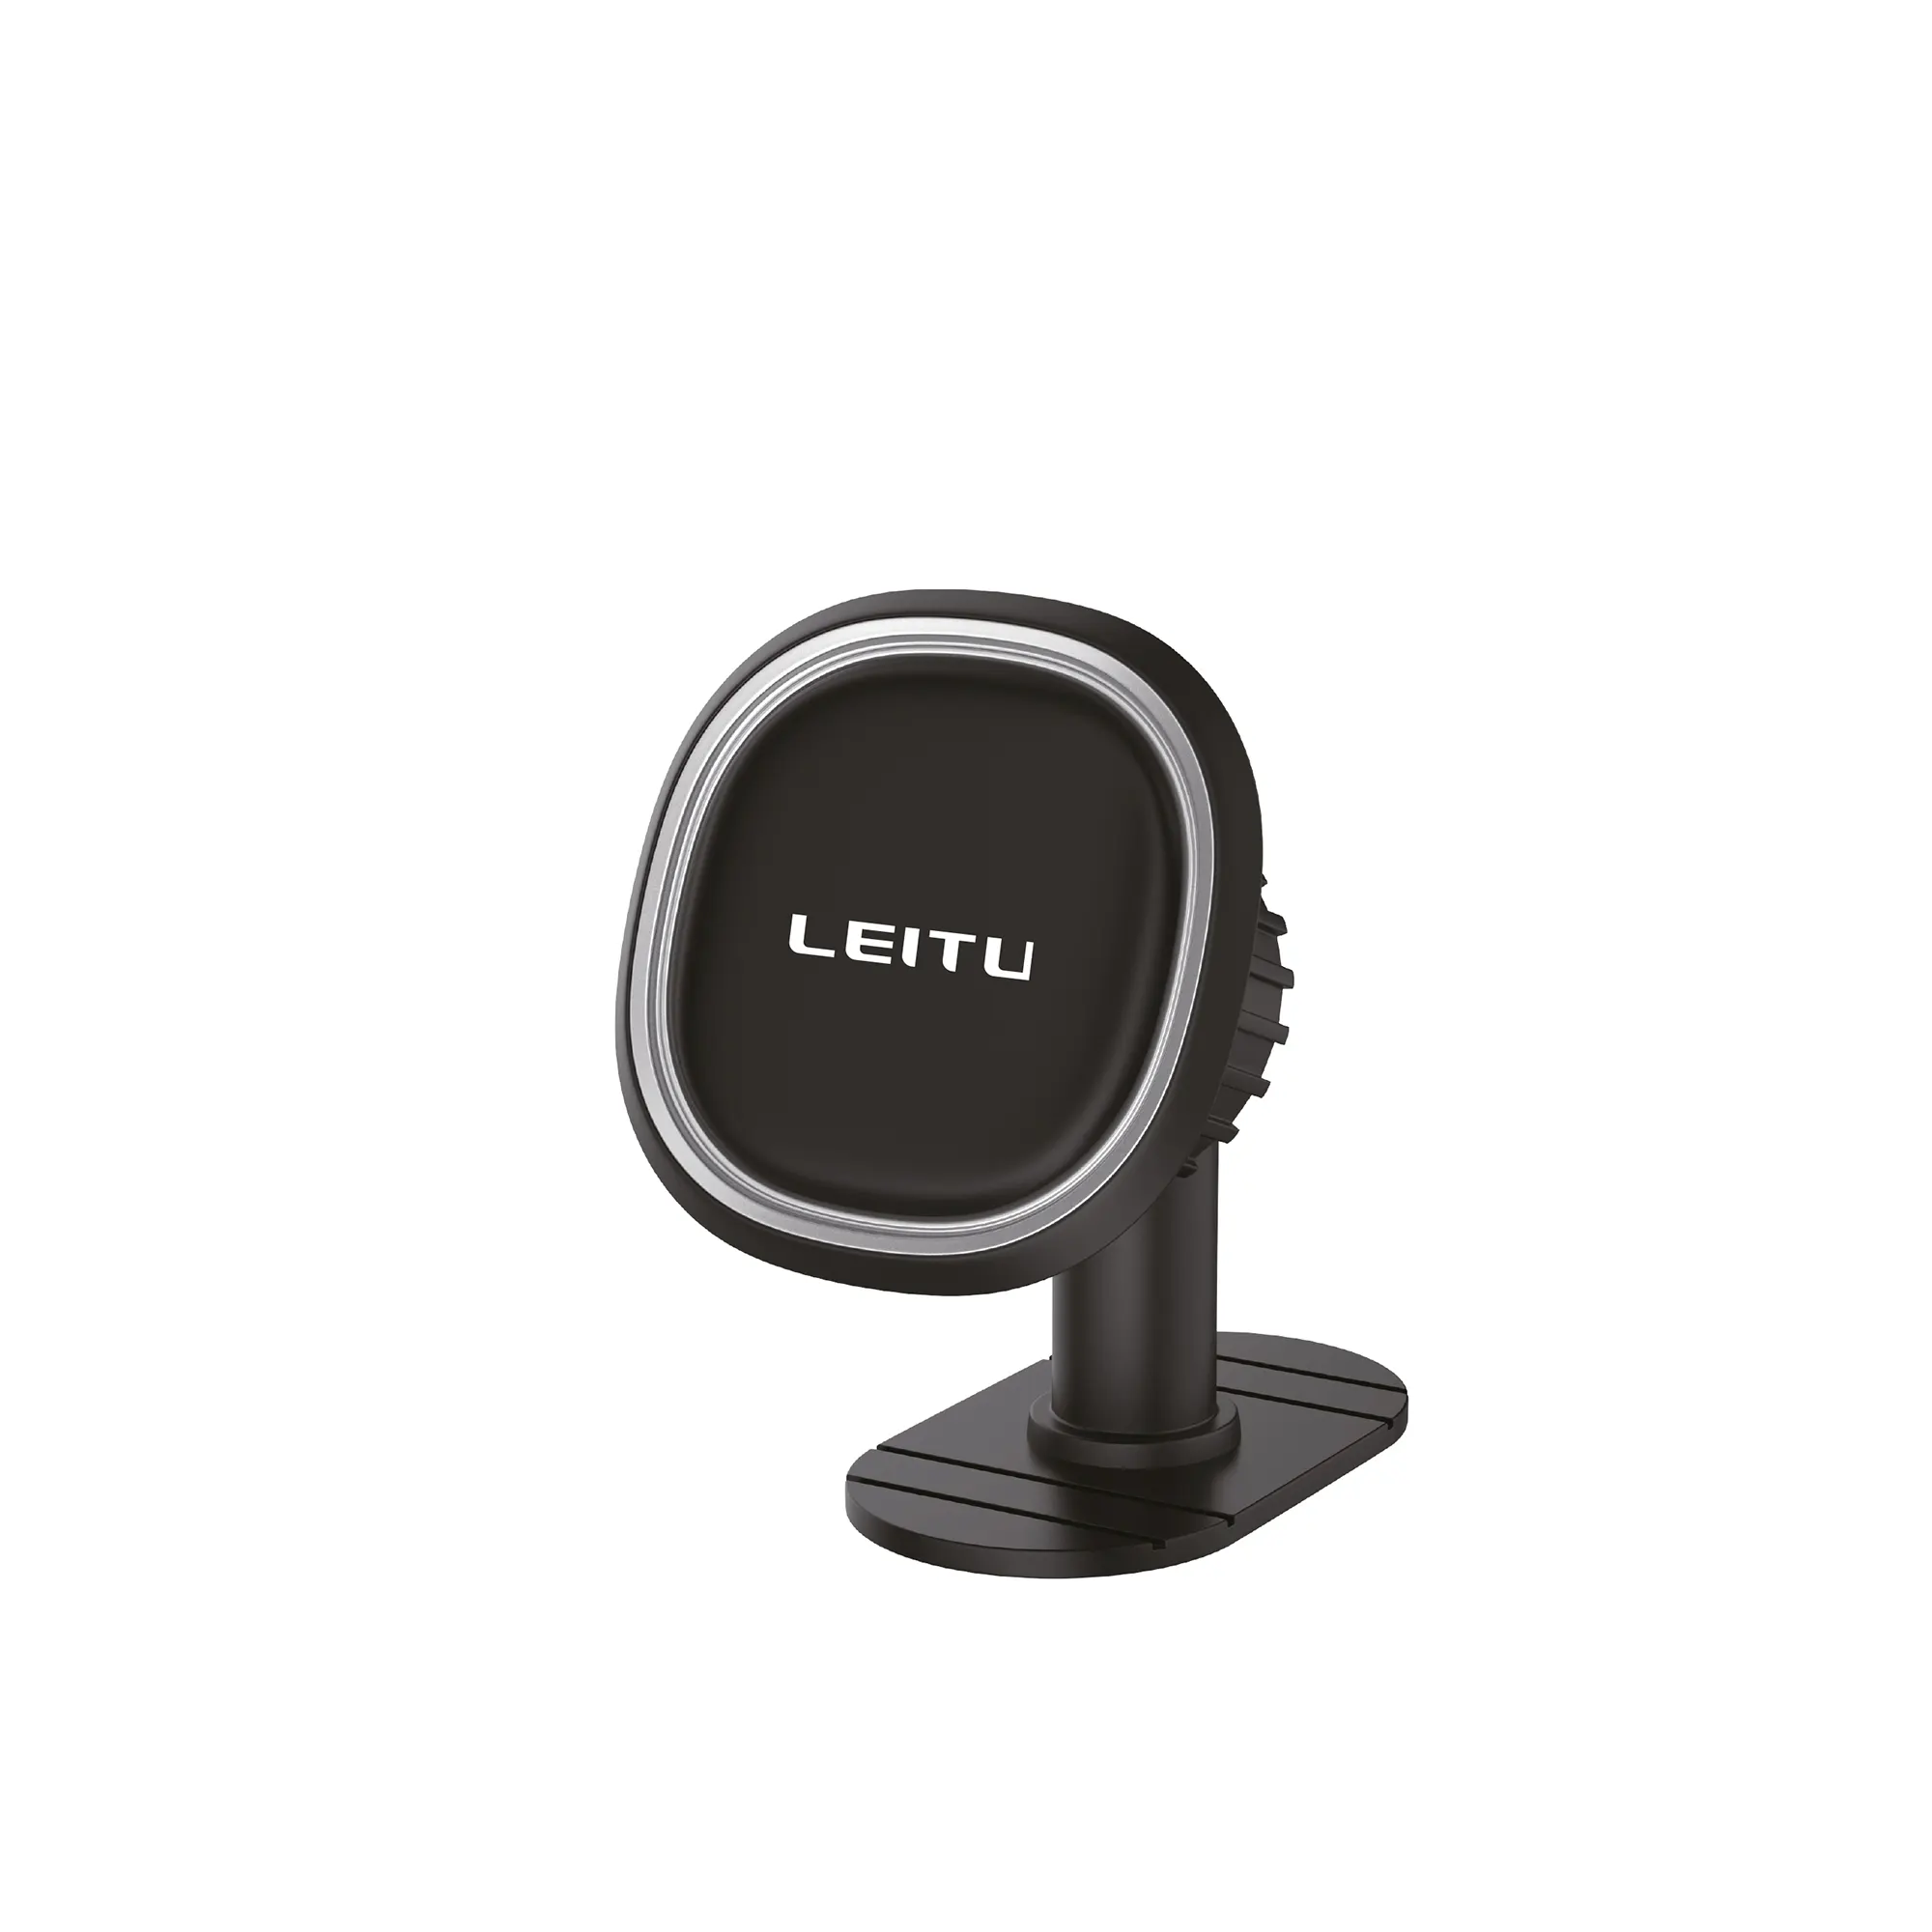 پایه نگهدارنده موبایل یا هولدر برند لیتو مدل LR-37 |  هولدر گوشی موبایل لیتو مدل LEITU LR-37 ا Leitu LR-37 Mobile Phone Holder